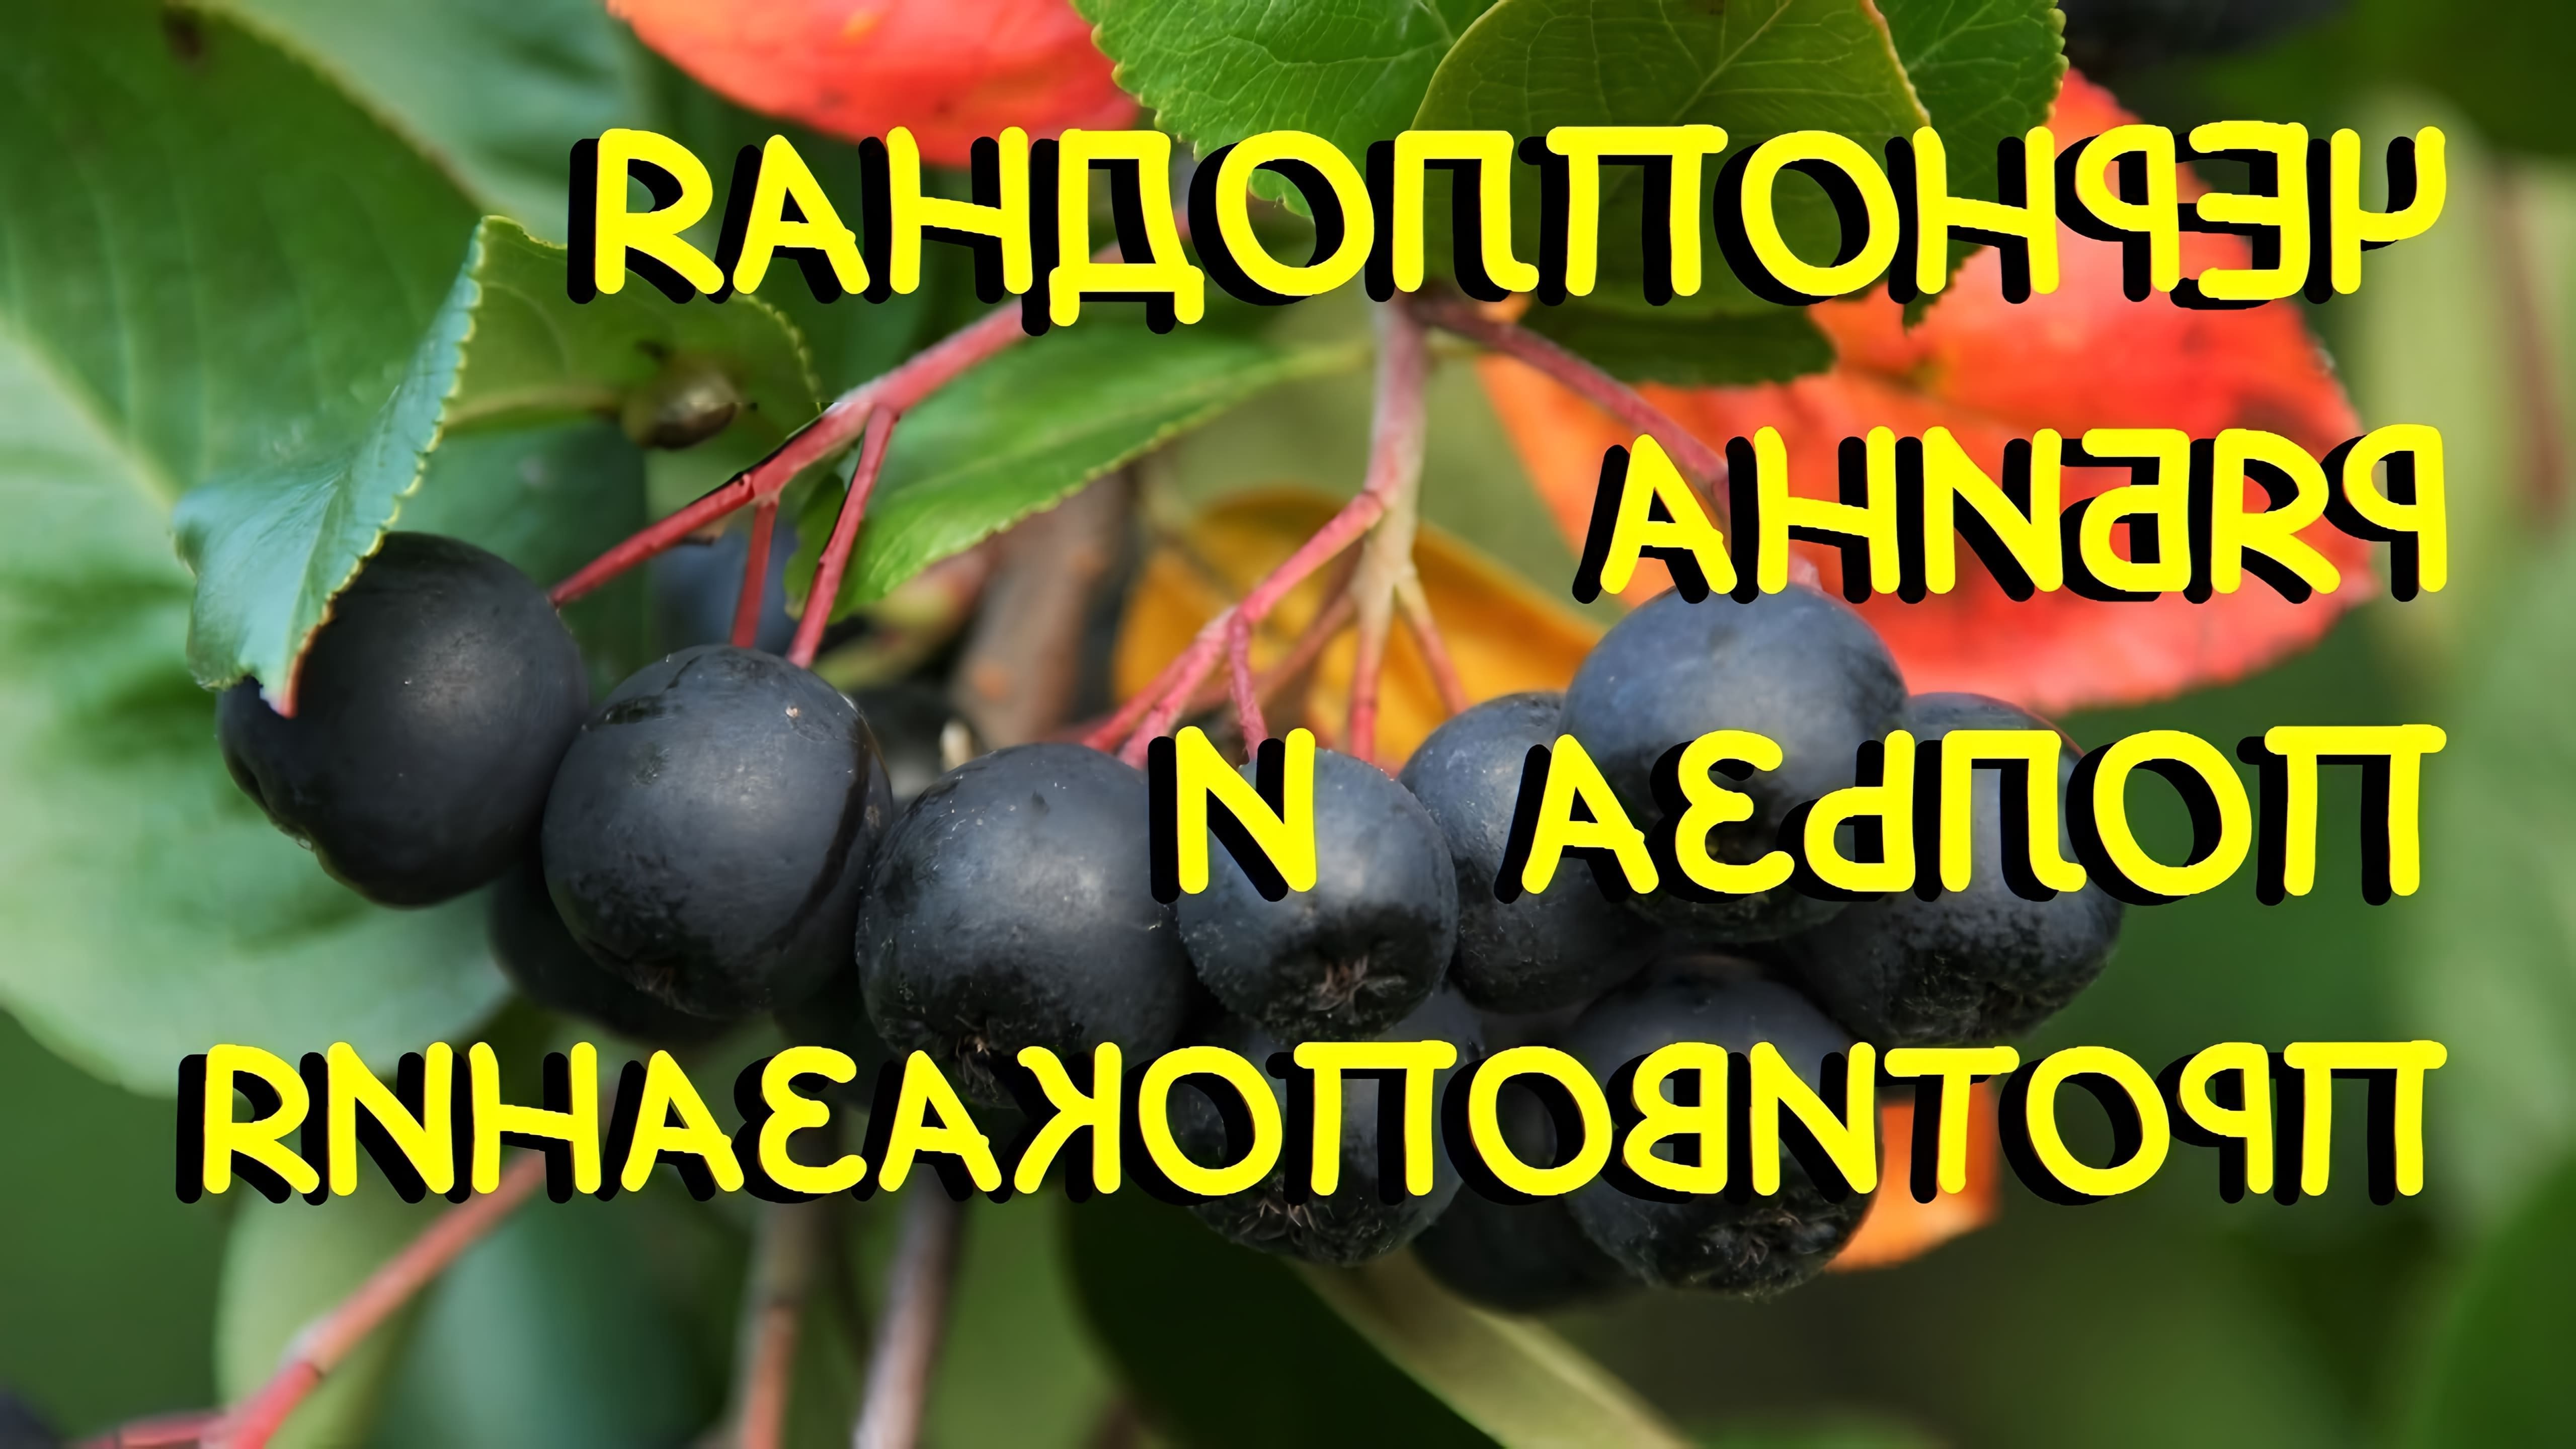 Черноплодная рябина - это ягода, которая обладает множеством полезных свойств